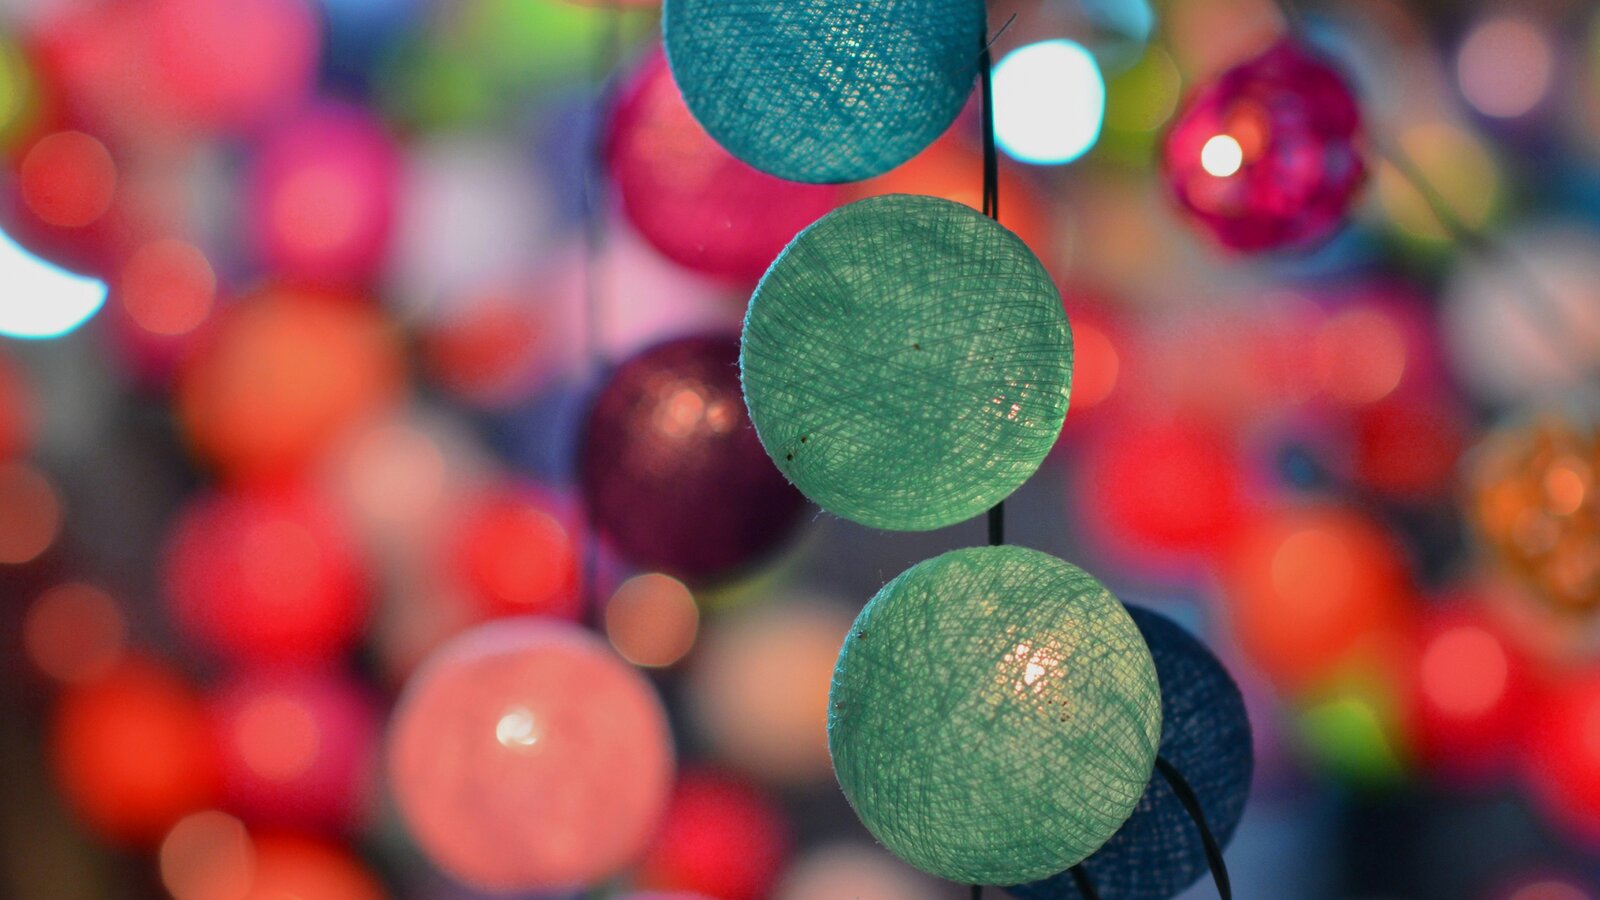 Na zdjęciu zostały przedstawione kolorowe świecące kule. Są wykonane z siatki bawełnianej, a w ich środku umiejscowione są lampki. Na pierwszym planie widać trzy świecące zielone kule połączone ze sobą kablem zasilającym. W tle widać kolorowe kule.